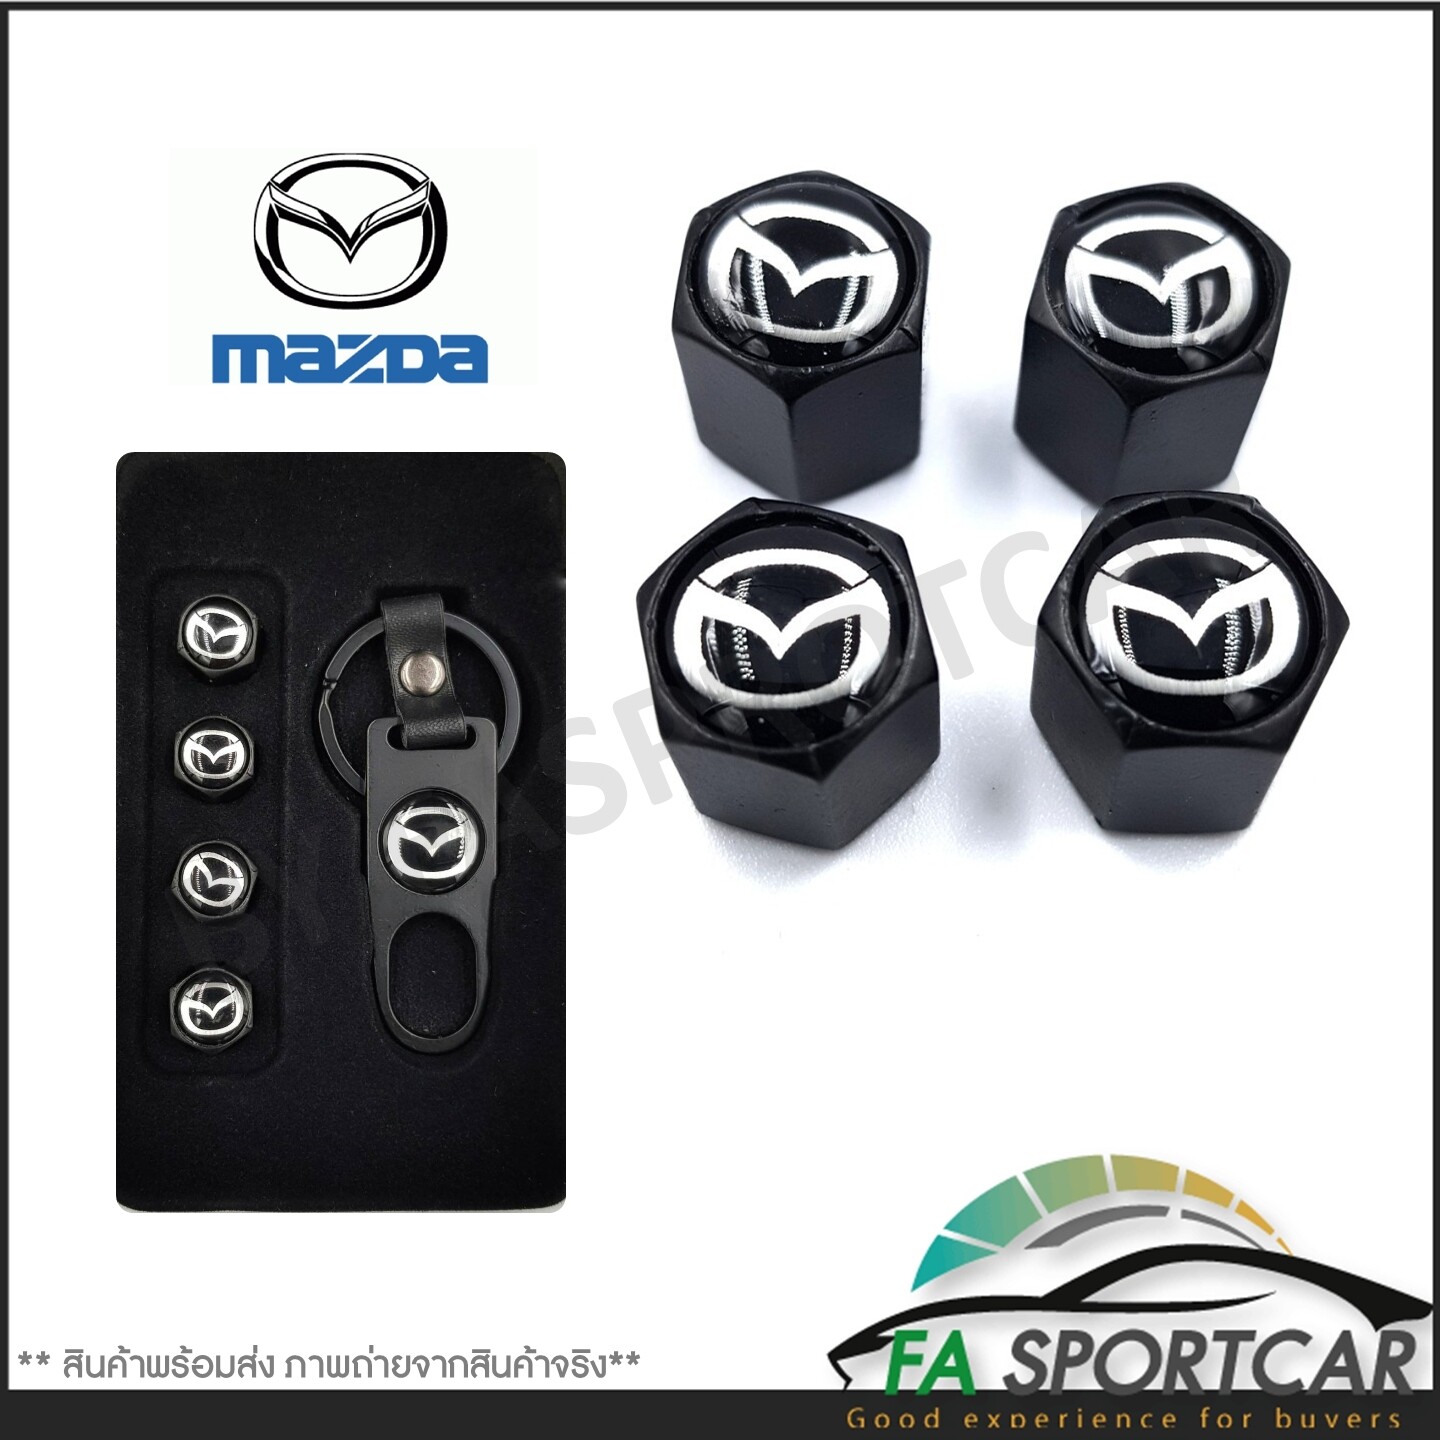 [รับประกันสินค้า] จุกลมยางรถยนต์ พร้อมโลโก้ จุกปิดลมยางพร้อมประแจ ฝาปิดจุกลม ยางรถยนต์ Mazda 1 ชุด (4 อัน) - Car Tire Valve Caps